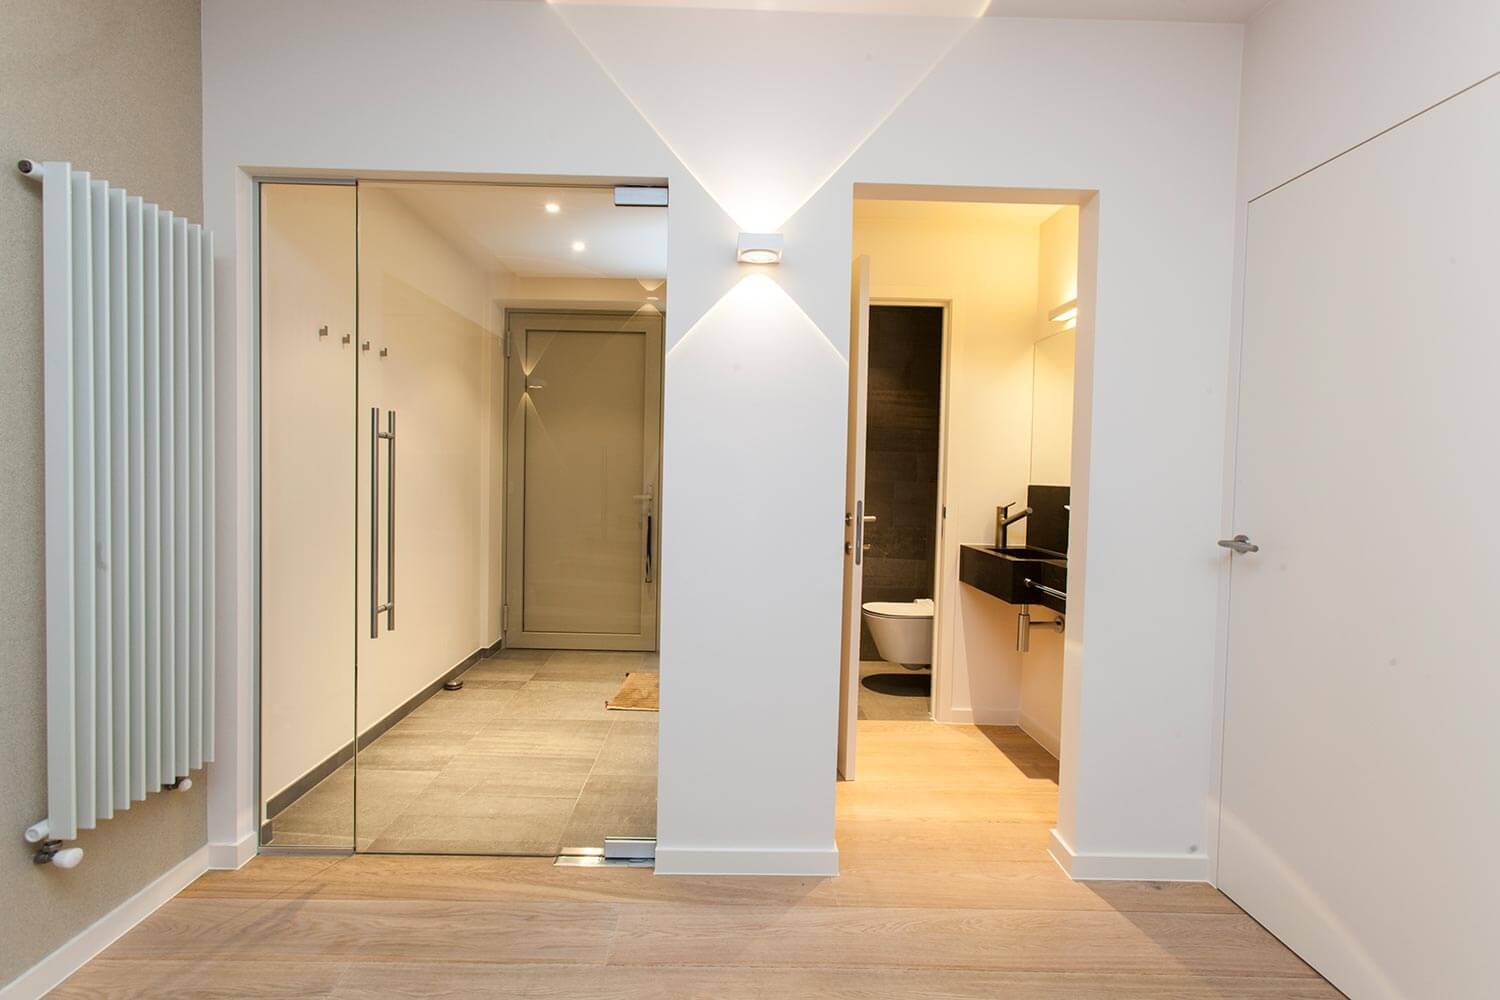 foto van een moderne witte inkomhal, met legklaar parket op de vloer, glazen deur richting de voordeur en doorgang richting een gastentoilet. wandverlichting en een moderne centrale verwarming tegen de muur